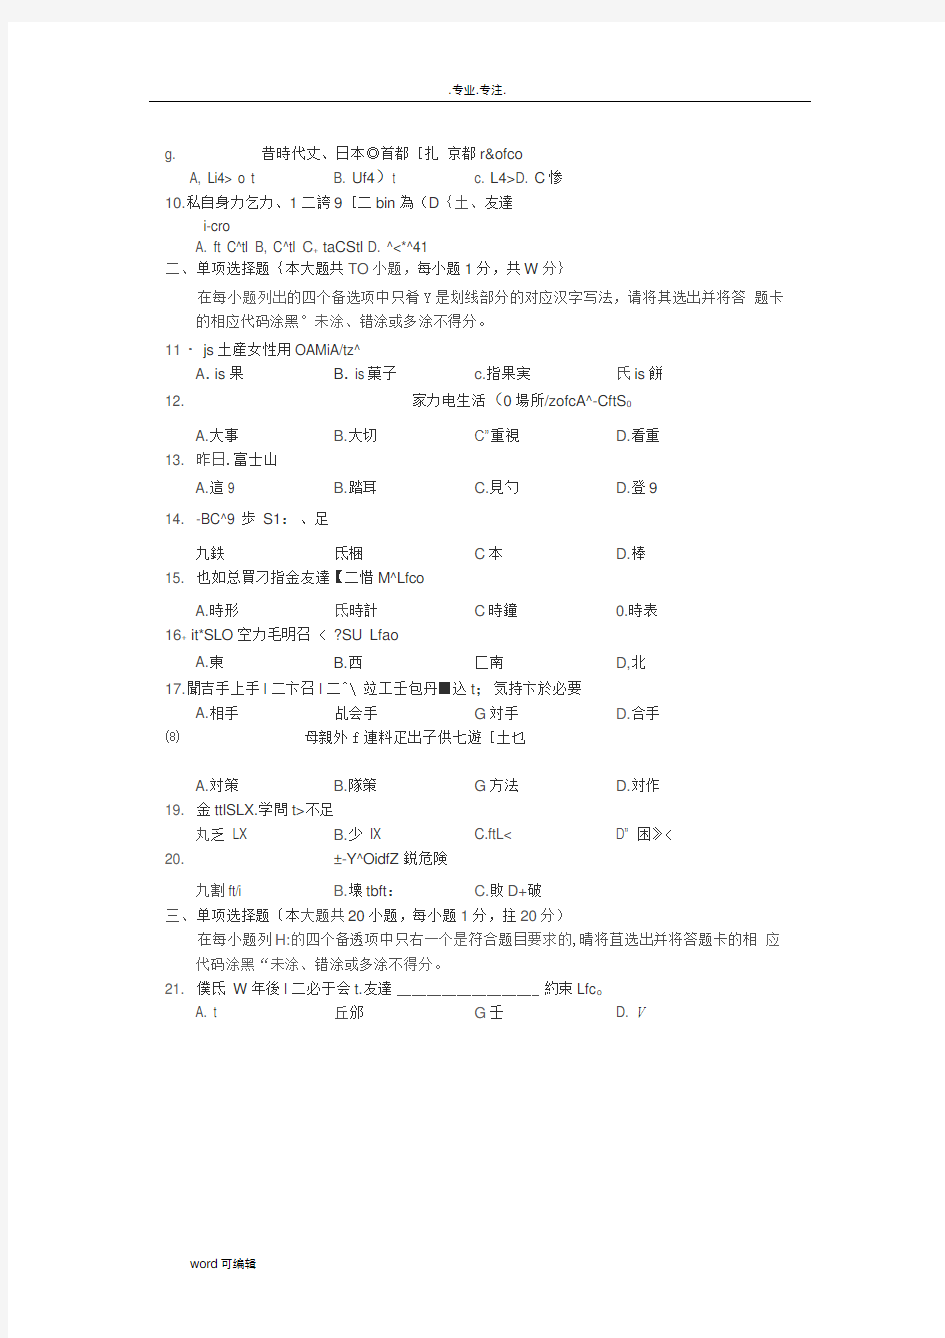 2017年4月自学考试第二外语(日语)00840试题与答案解析完整版